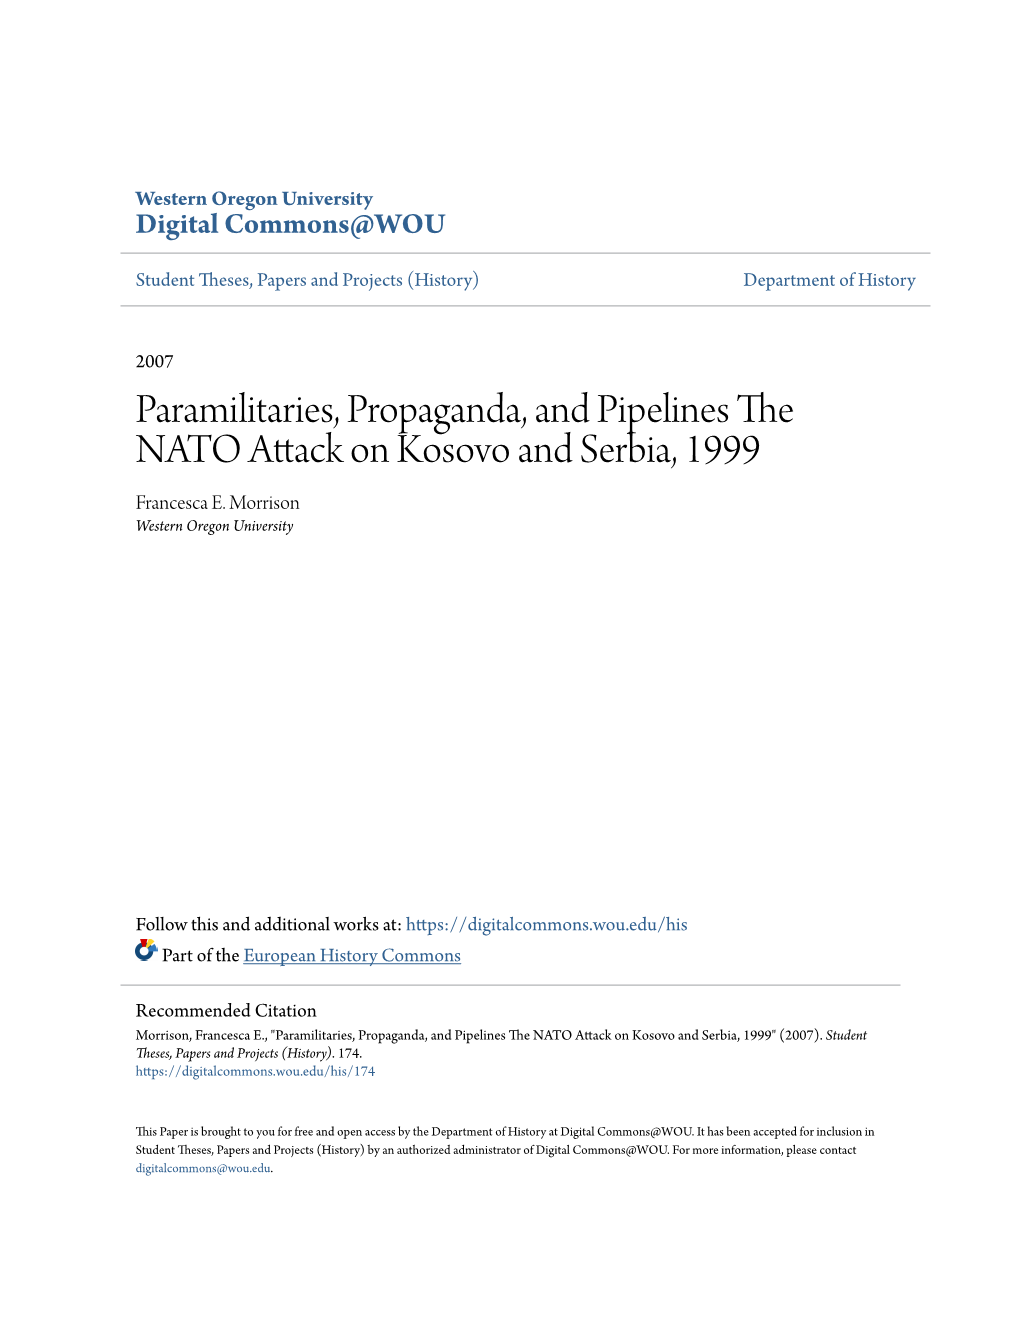 Paramilitaries, Propaganda, and Pipelines the NATO Attack on Kosovo and Serbia, 1999 Francesca E